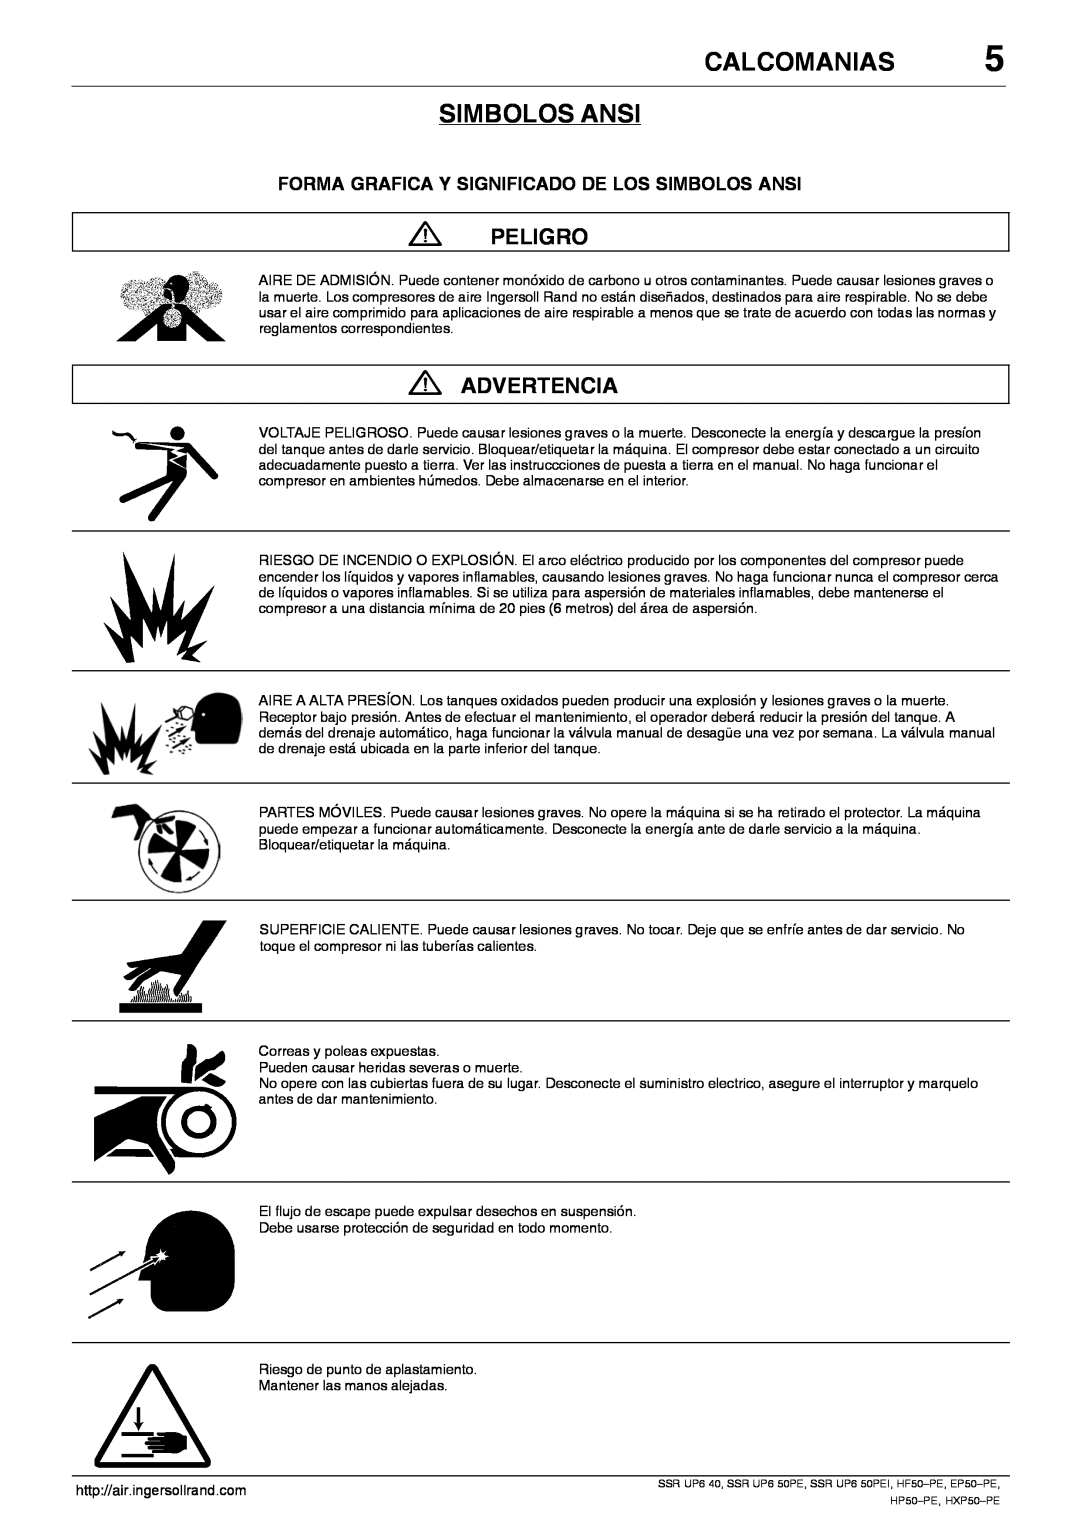 Ingersoll-Rand EP50-PE Calcomanias Simbolos Ansi, Peligro, Advertencia, Forma Grafica Y Significado De Los Simbolos Ansi 